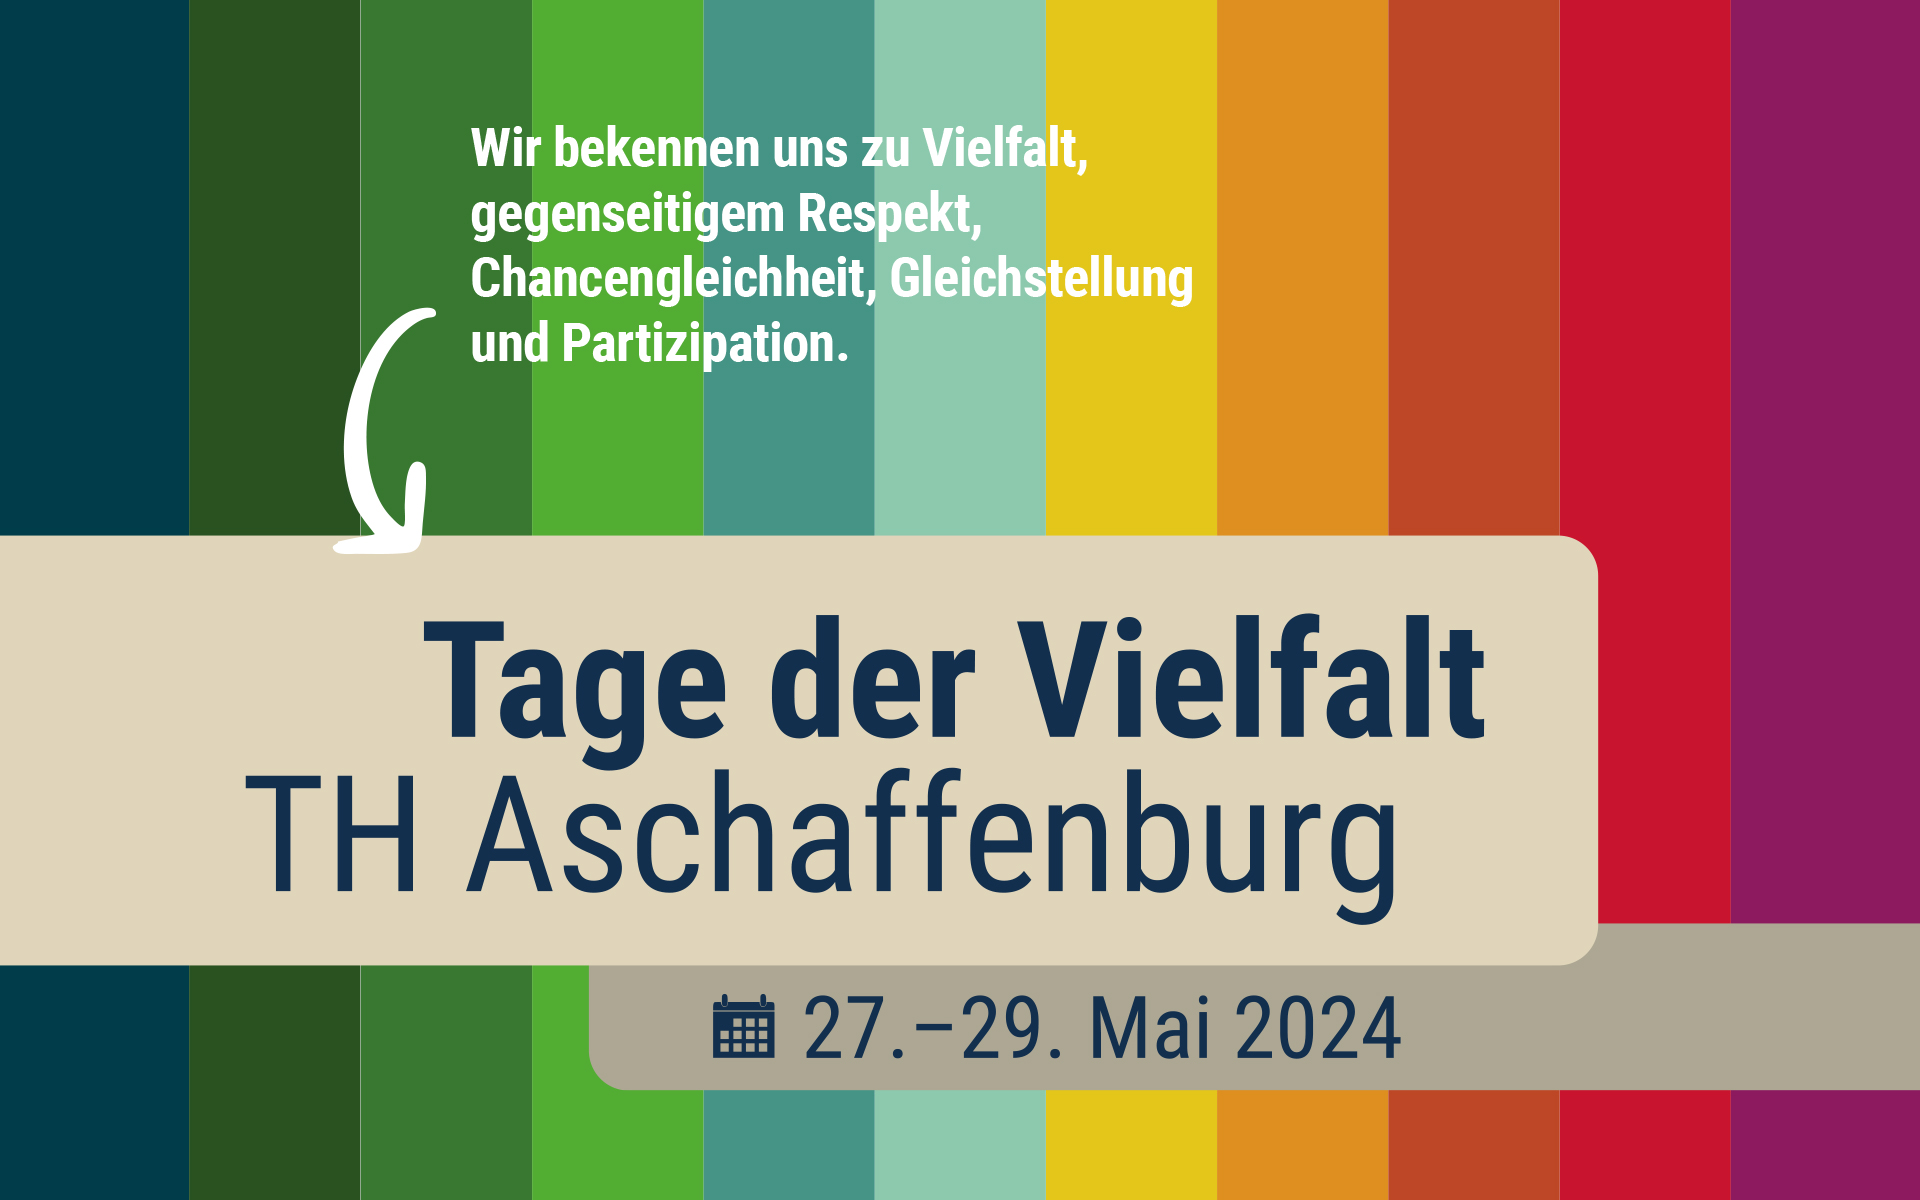 Banner für die Tage der Vielfalt vom 27. bis 29. Mai an der Technischen Hochschule Aschaffenburg.